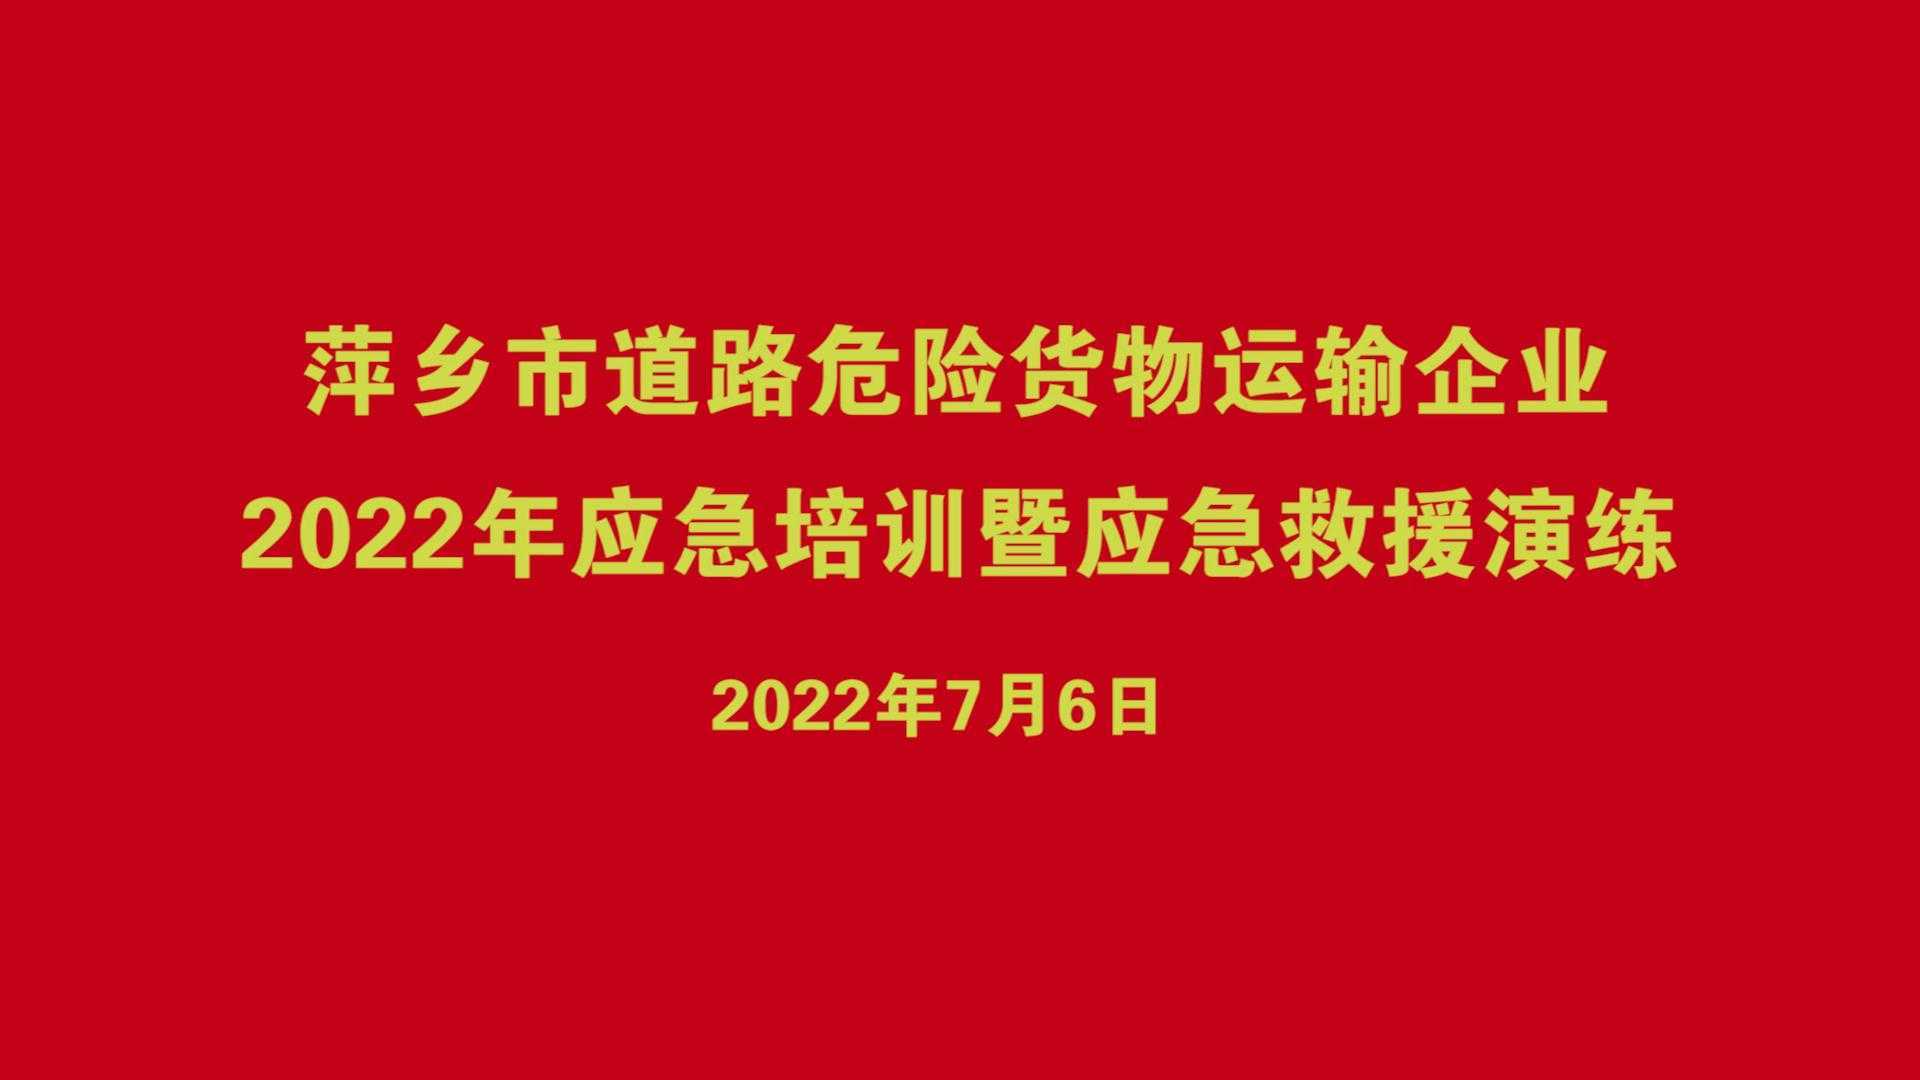 萍乡市道路危险货物运输企业2022年应急培训暨应急救援演练